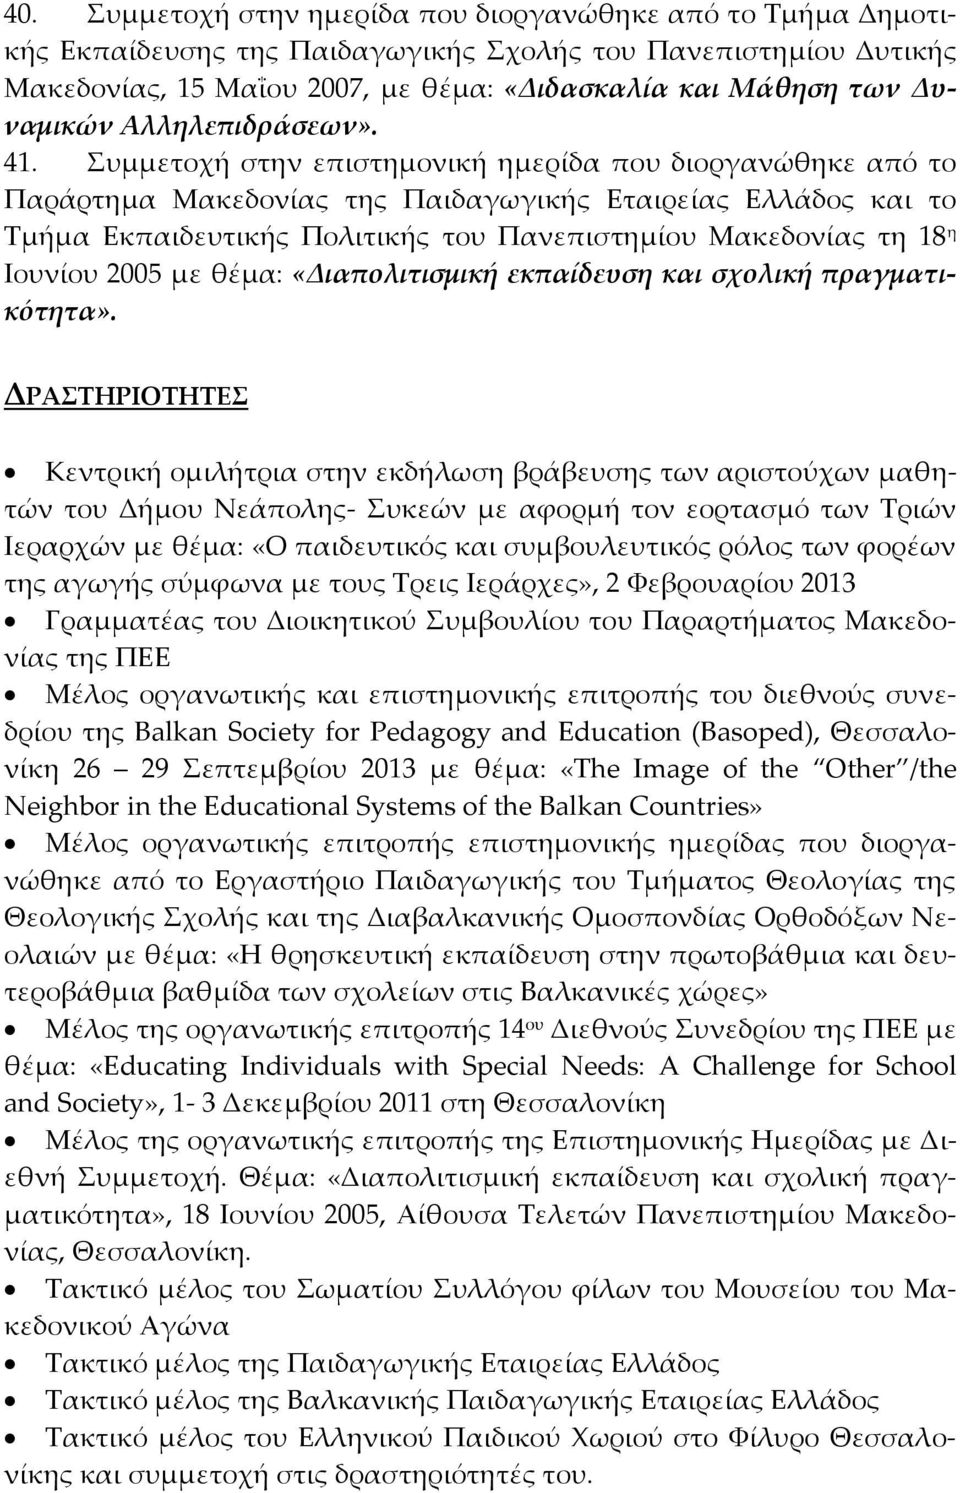 Συμμετοχή στην επιστημονική ημερίδα που διοργανώθηκε από το Παράρτημα Μακεδονίας της Παιδαγωγικής Εταιρείας Ελλάδος και το Τμήμα Εκπαιδευτικής Πολιτικής του Πανεπιστημίου Μακεδονίας τη 18 η Ιουνίου